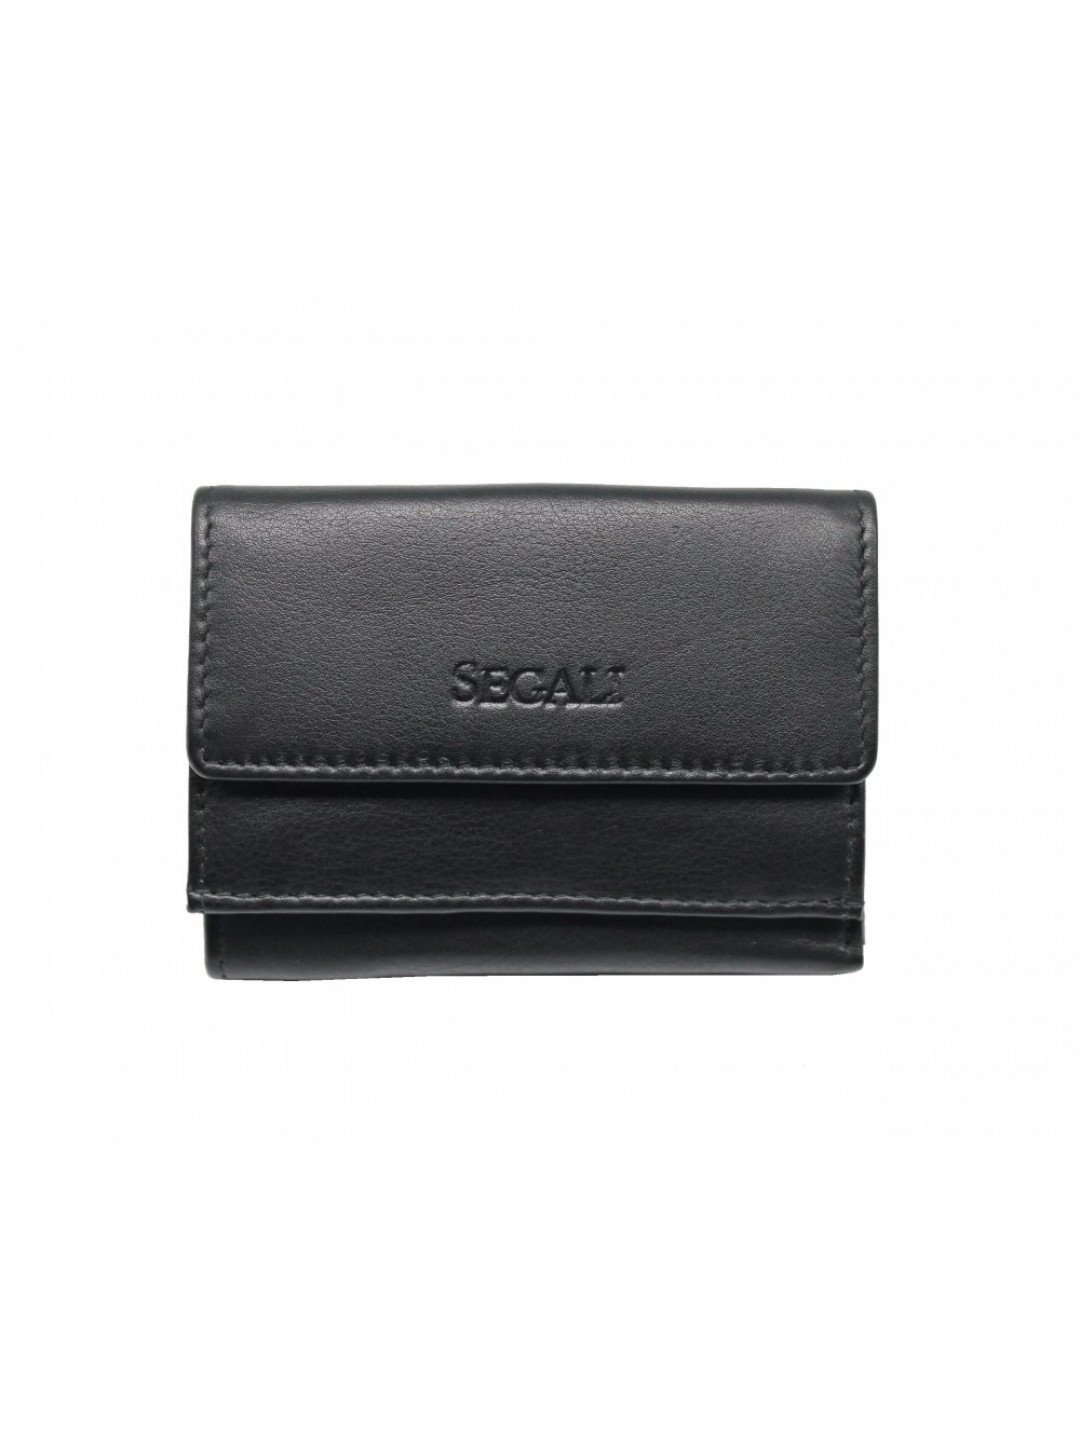 Dámská malá kožená peněženka SG-21756 černá